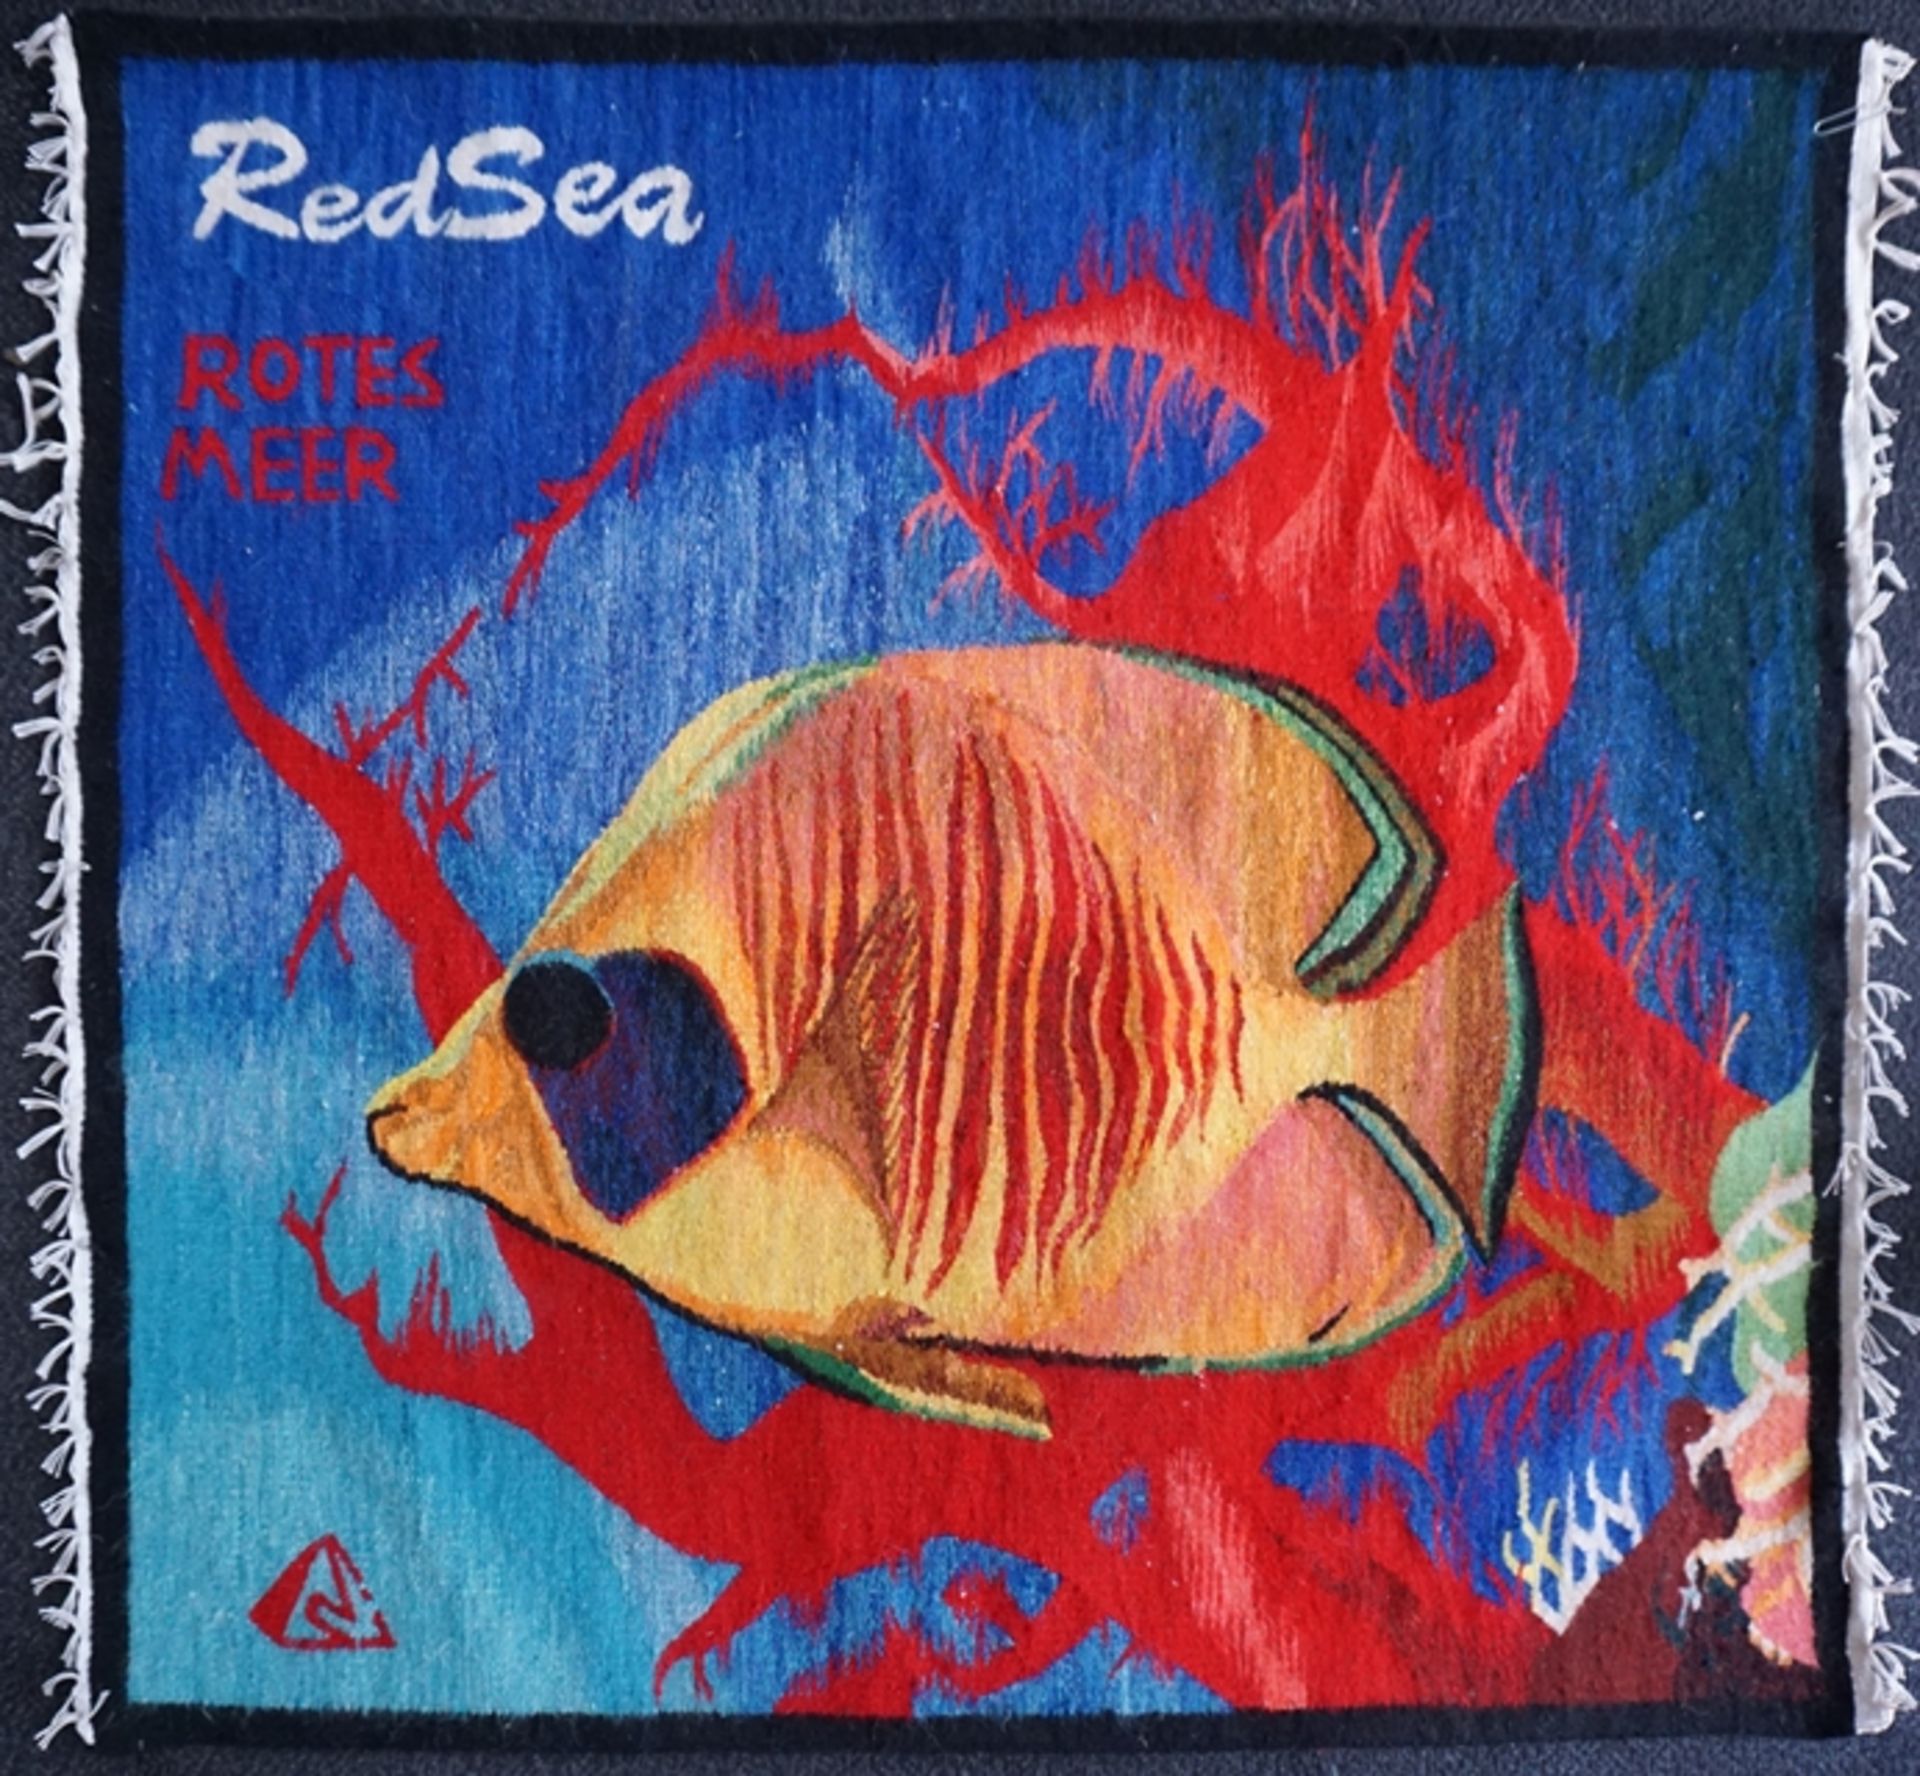 handgewebtes Wandbild "Rotes Meer" mit farbenfrohem Fischmotiv